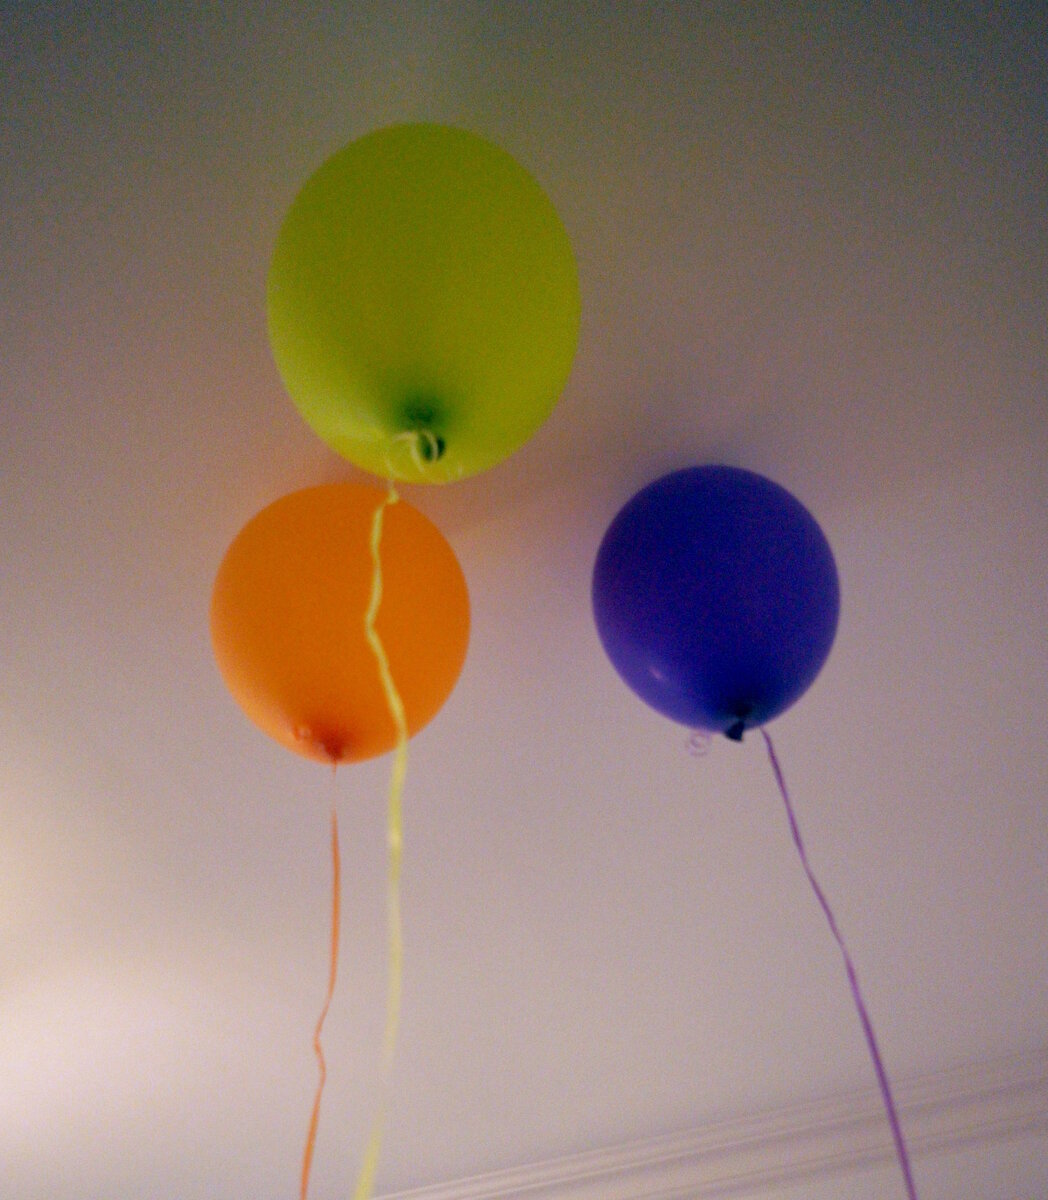 Воздушные  шарики. Наполнены гелием, подарены на день рождения. Принесены домой, и  что теперь с ними делать.